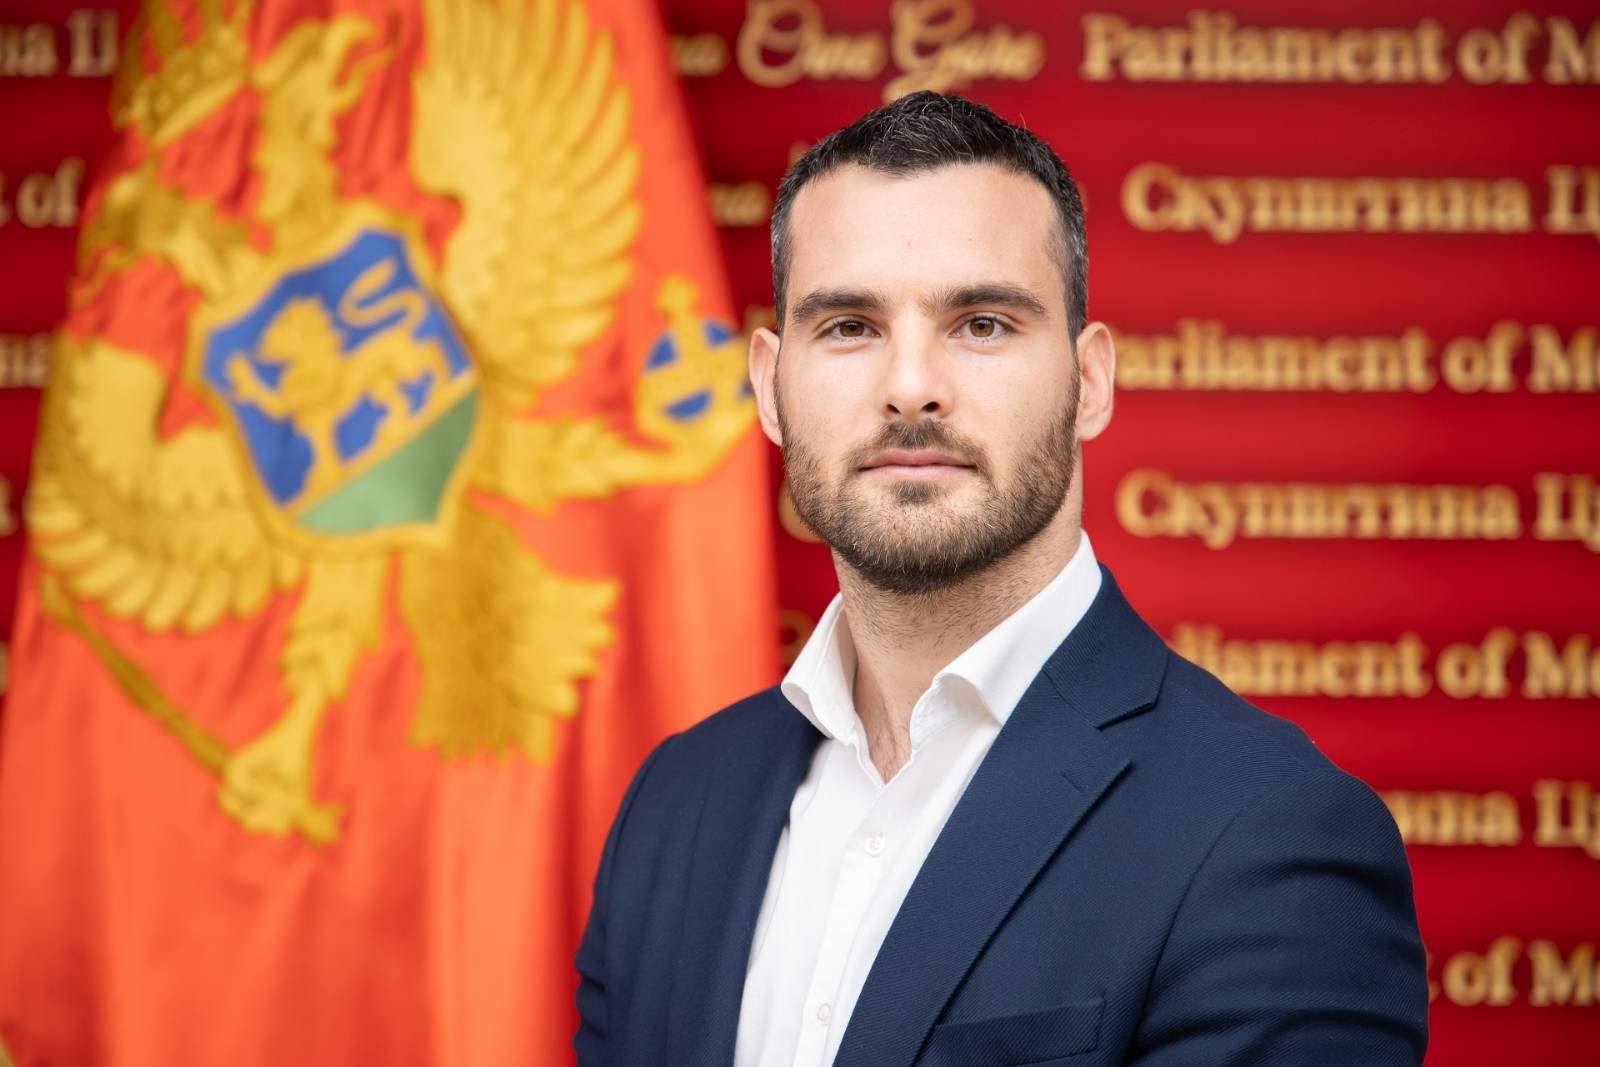 Janović: Dvije nezakonite odluke Abazovićeve Vlade koštale građane skoro osam miliona eura